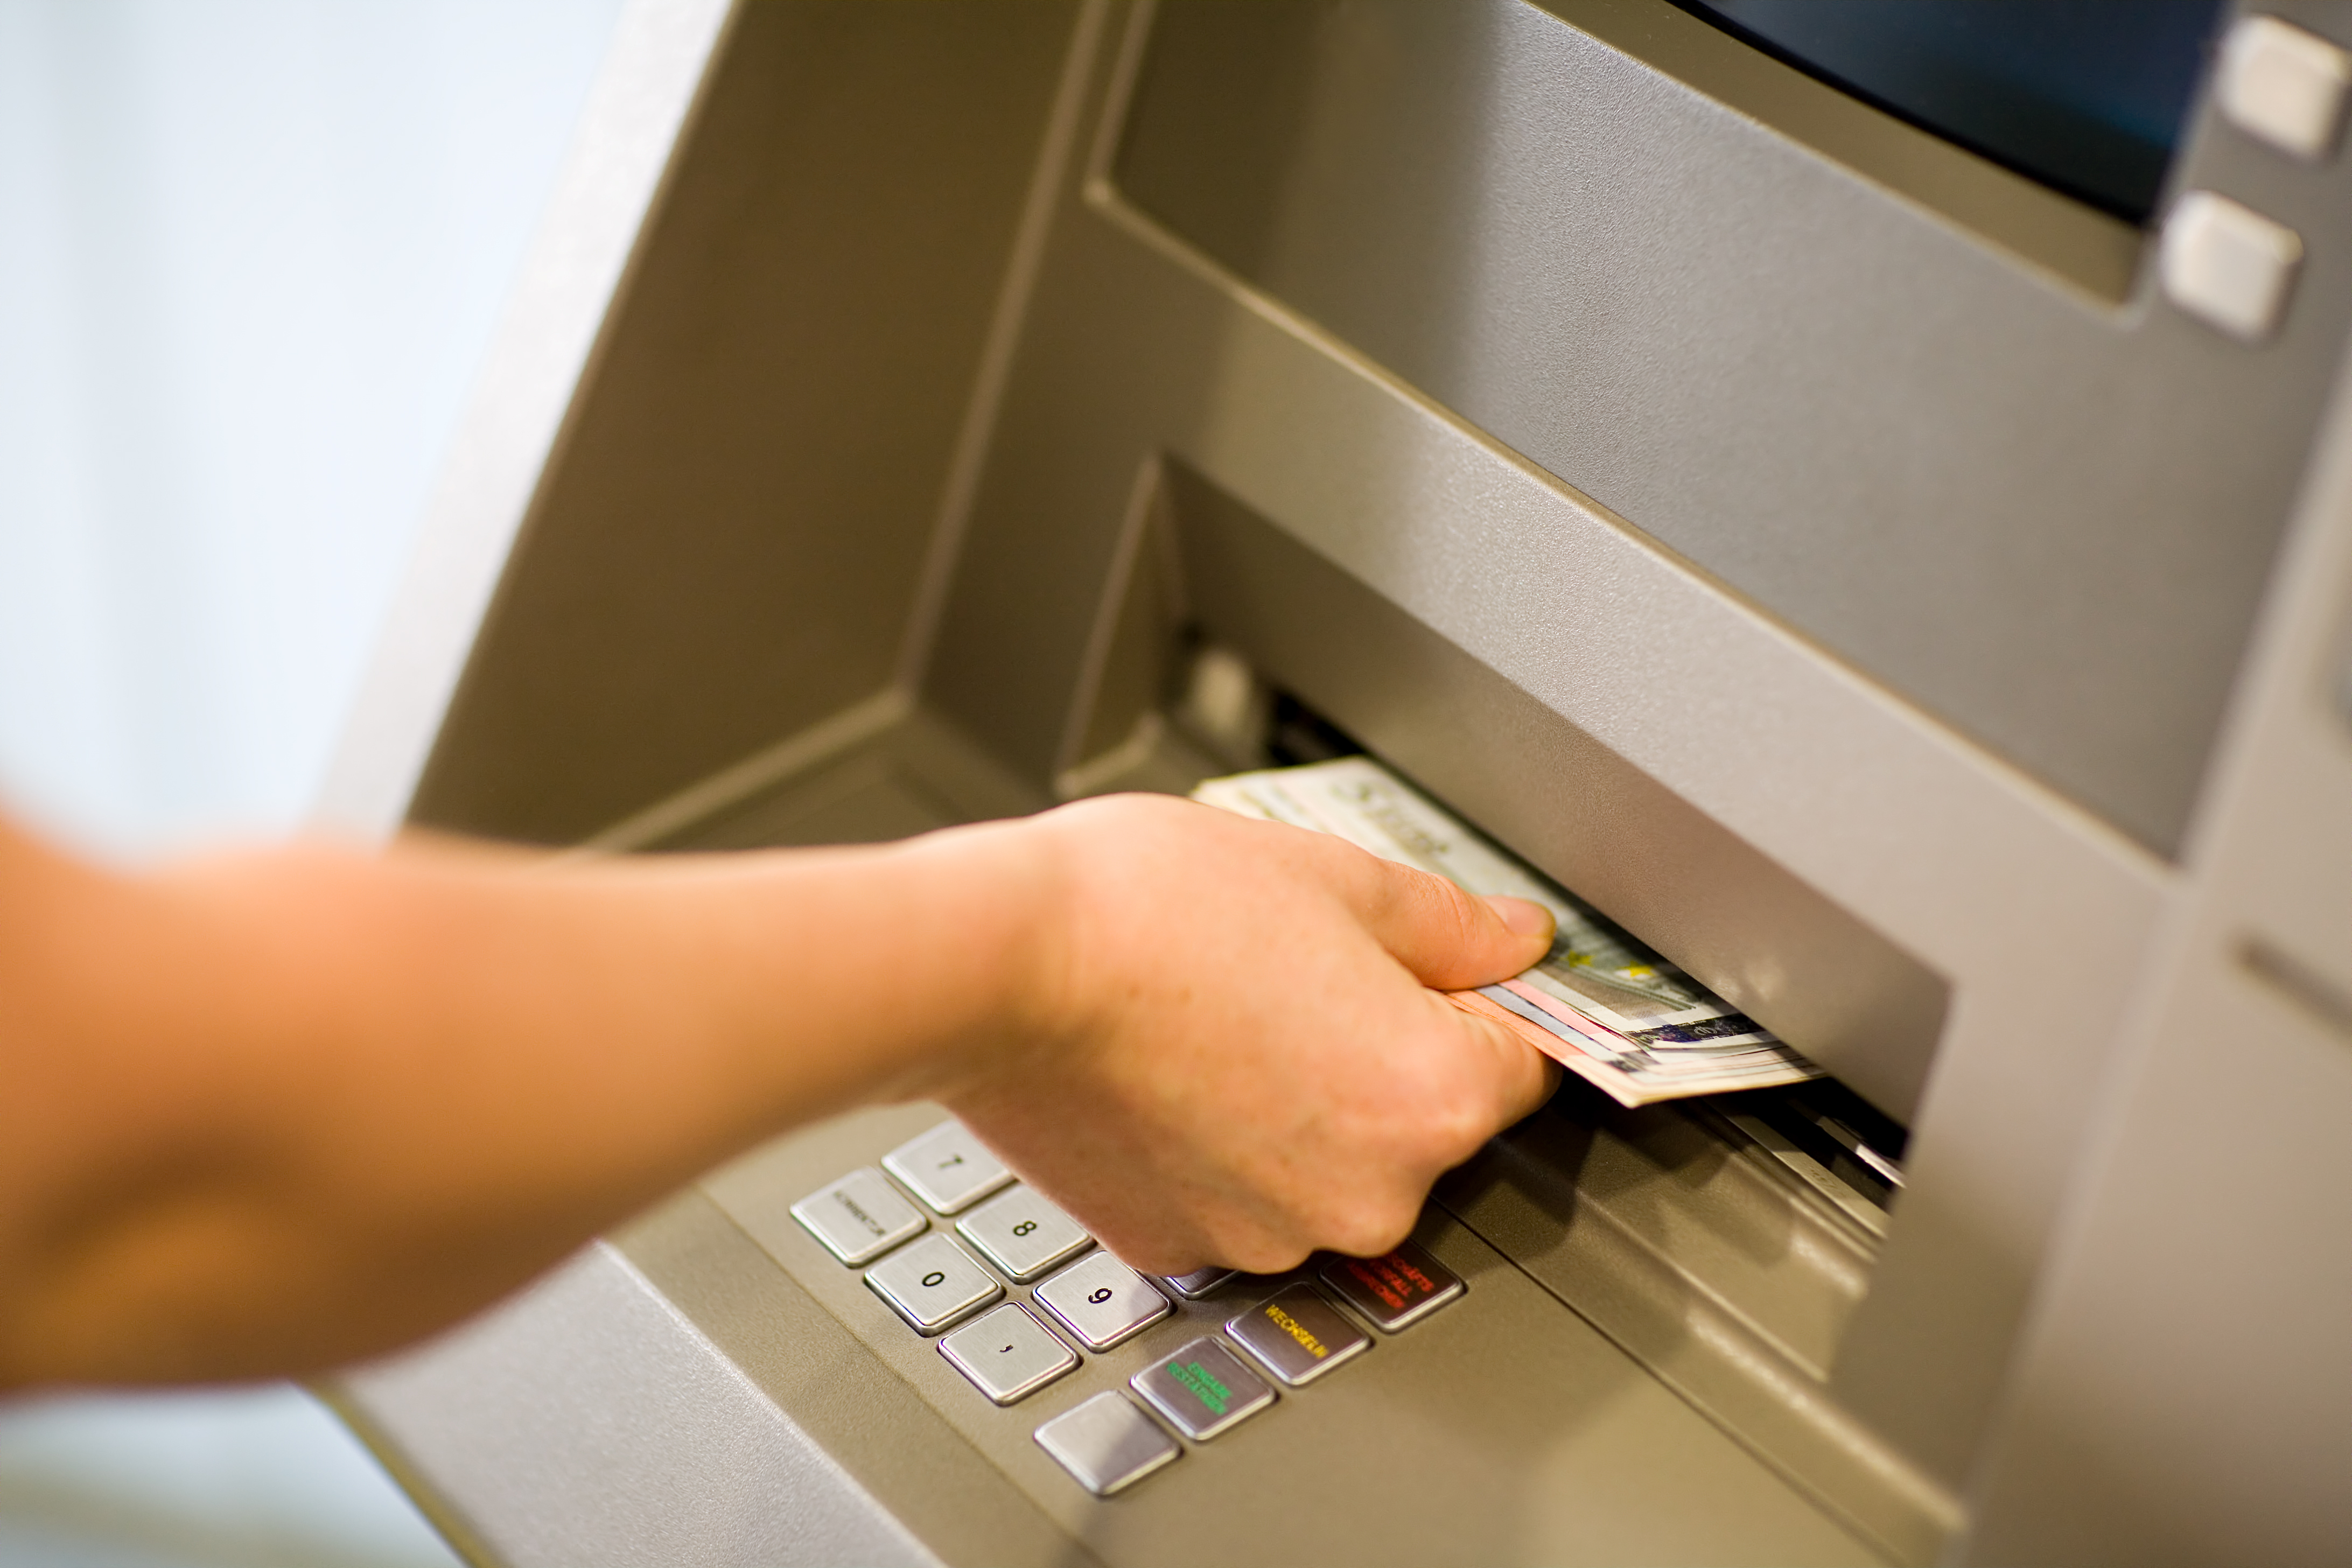 Eine Person, die Geld von einem Geldautomaten abhebt. | Quelle: Shutterstock